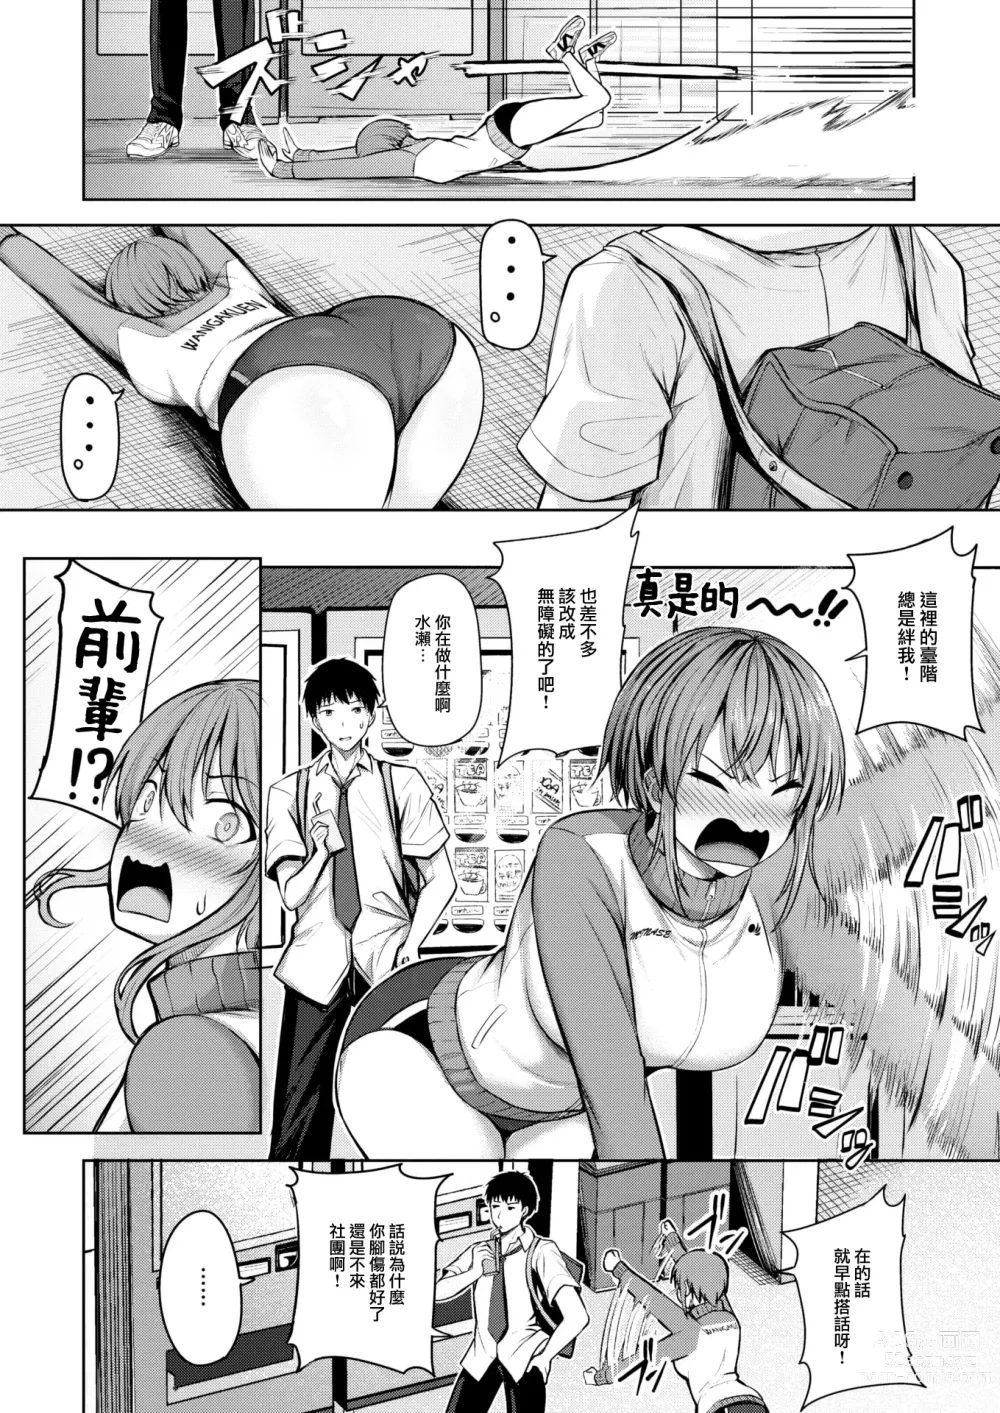 Page 3 of manga Start line